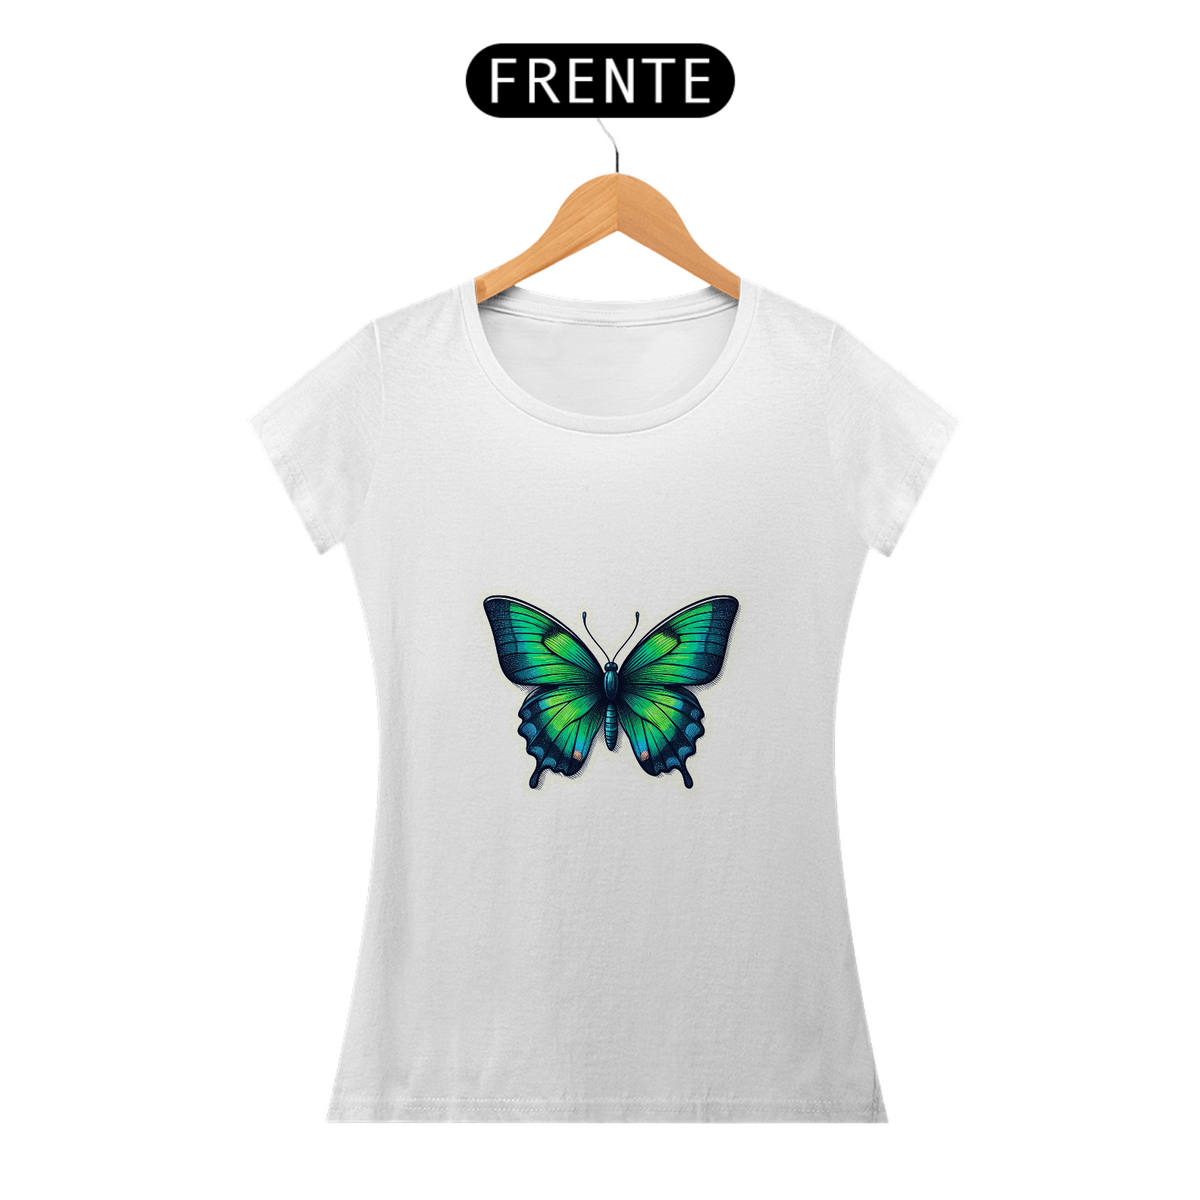 Nome do produto: Camiseta Sticker Feminina - Butterfly